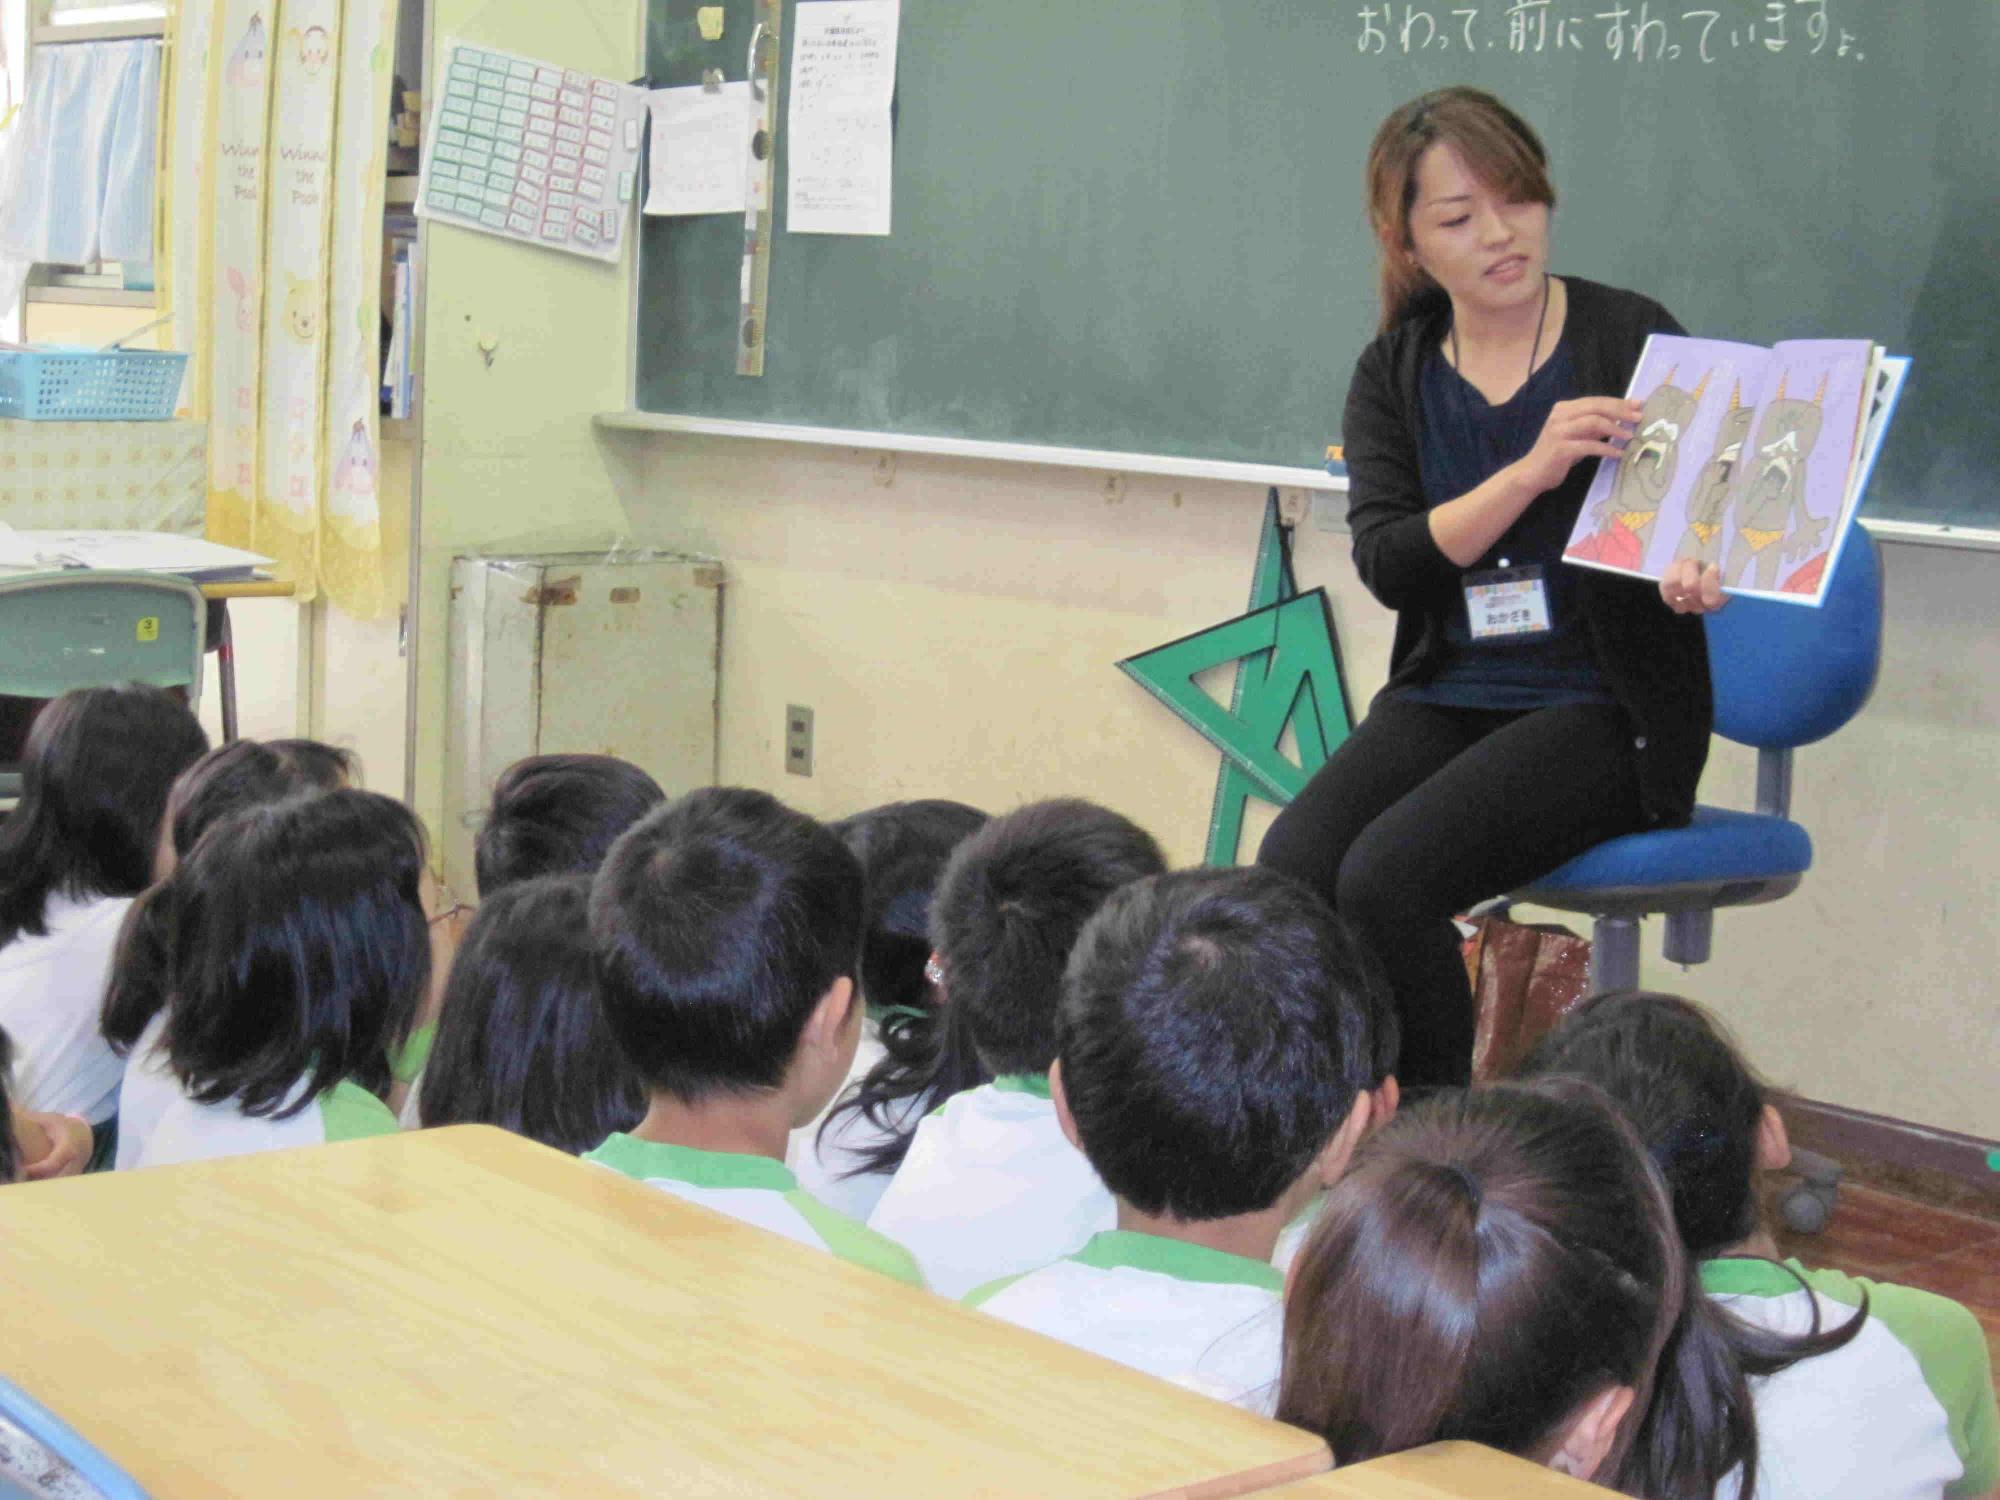 椅子に座りながら読み聞かせをするボランティアの方と、多数の児童が、黒板前に集まり、読み聞かせを聞いている写真